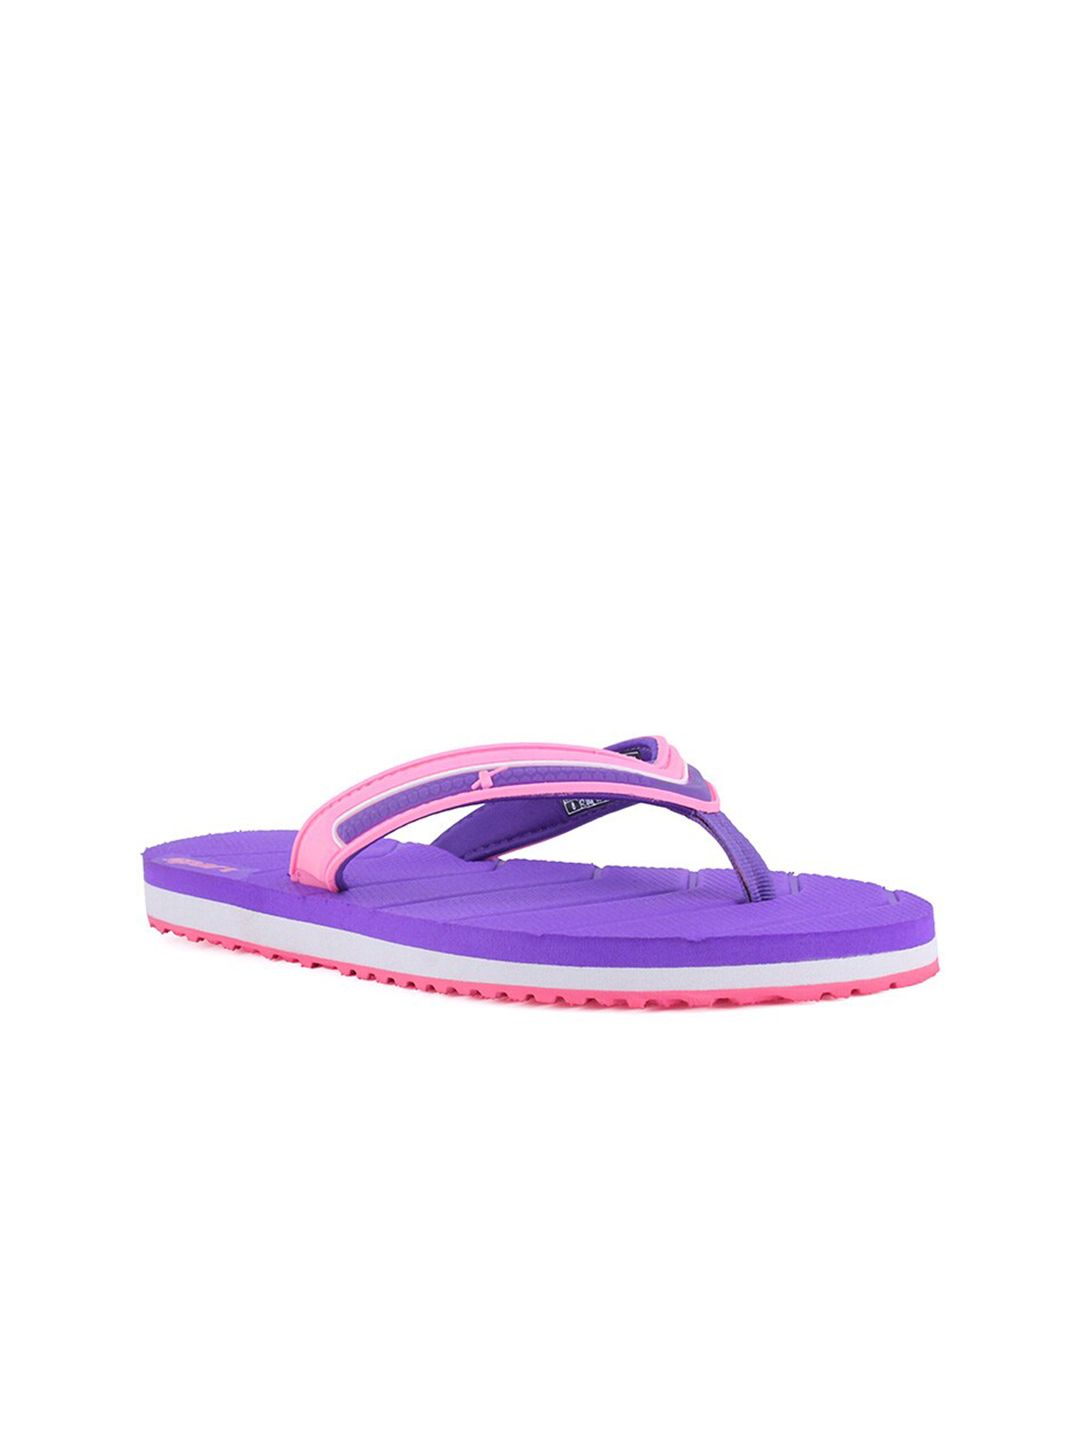 Sparx Women Purple & Pink Thong Flip-Flops Price in India